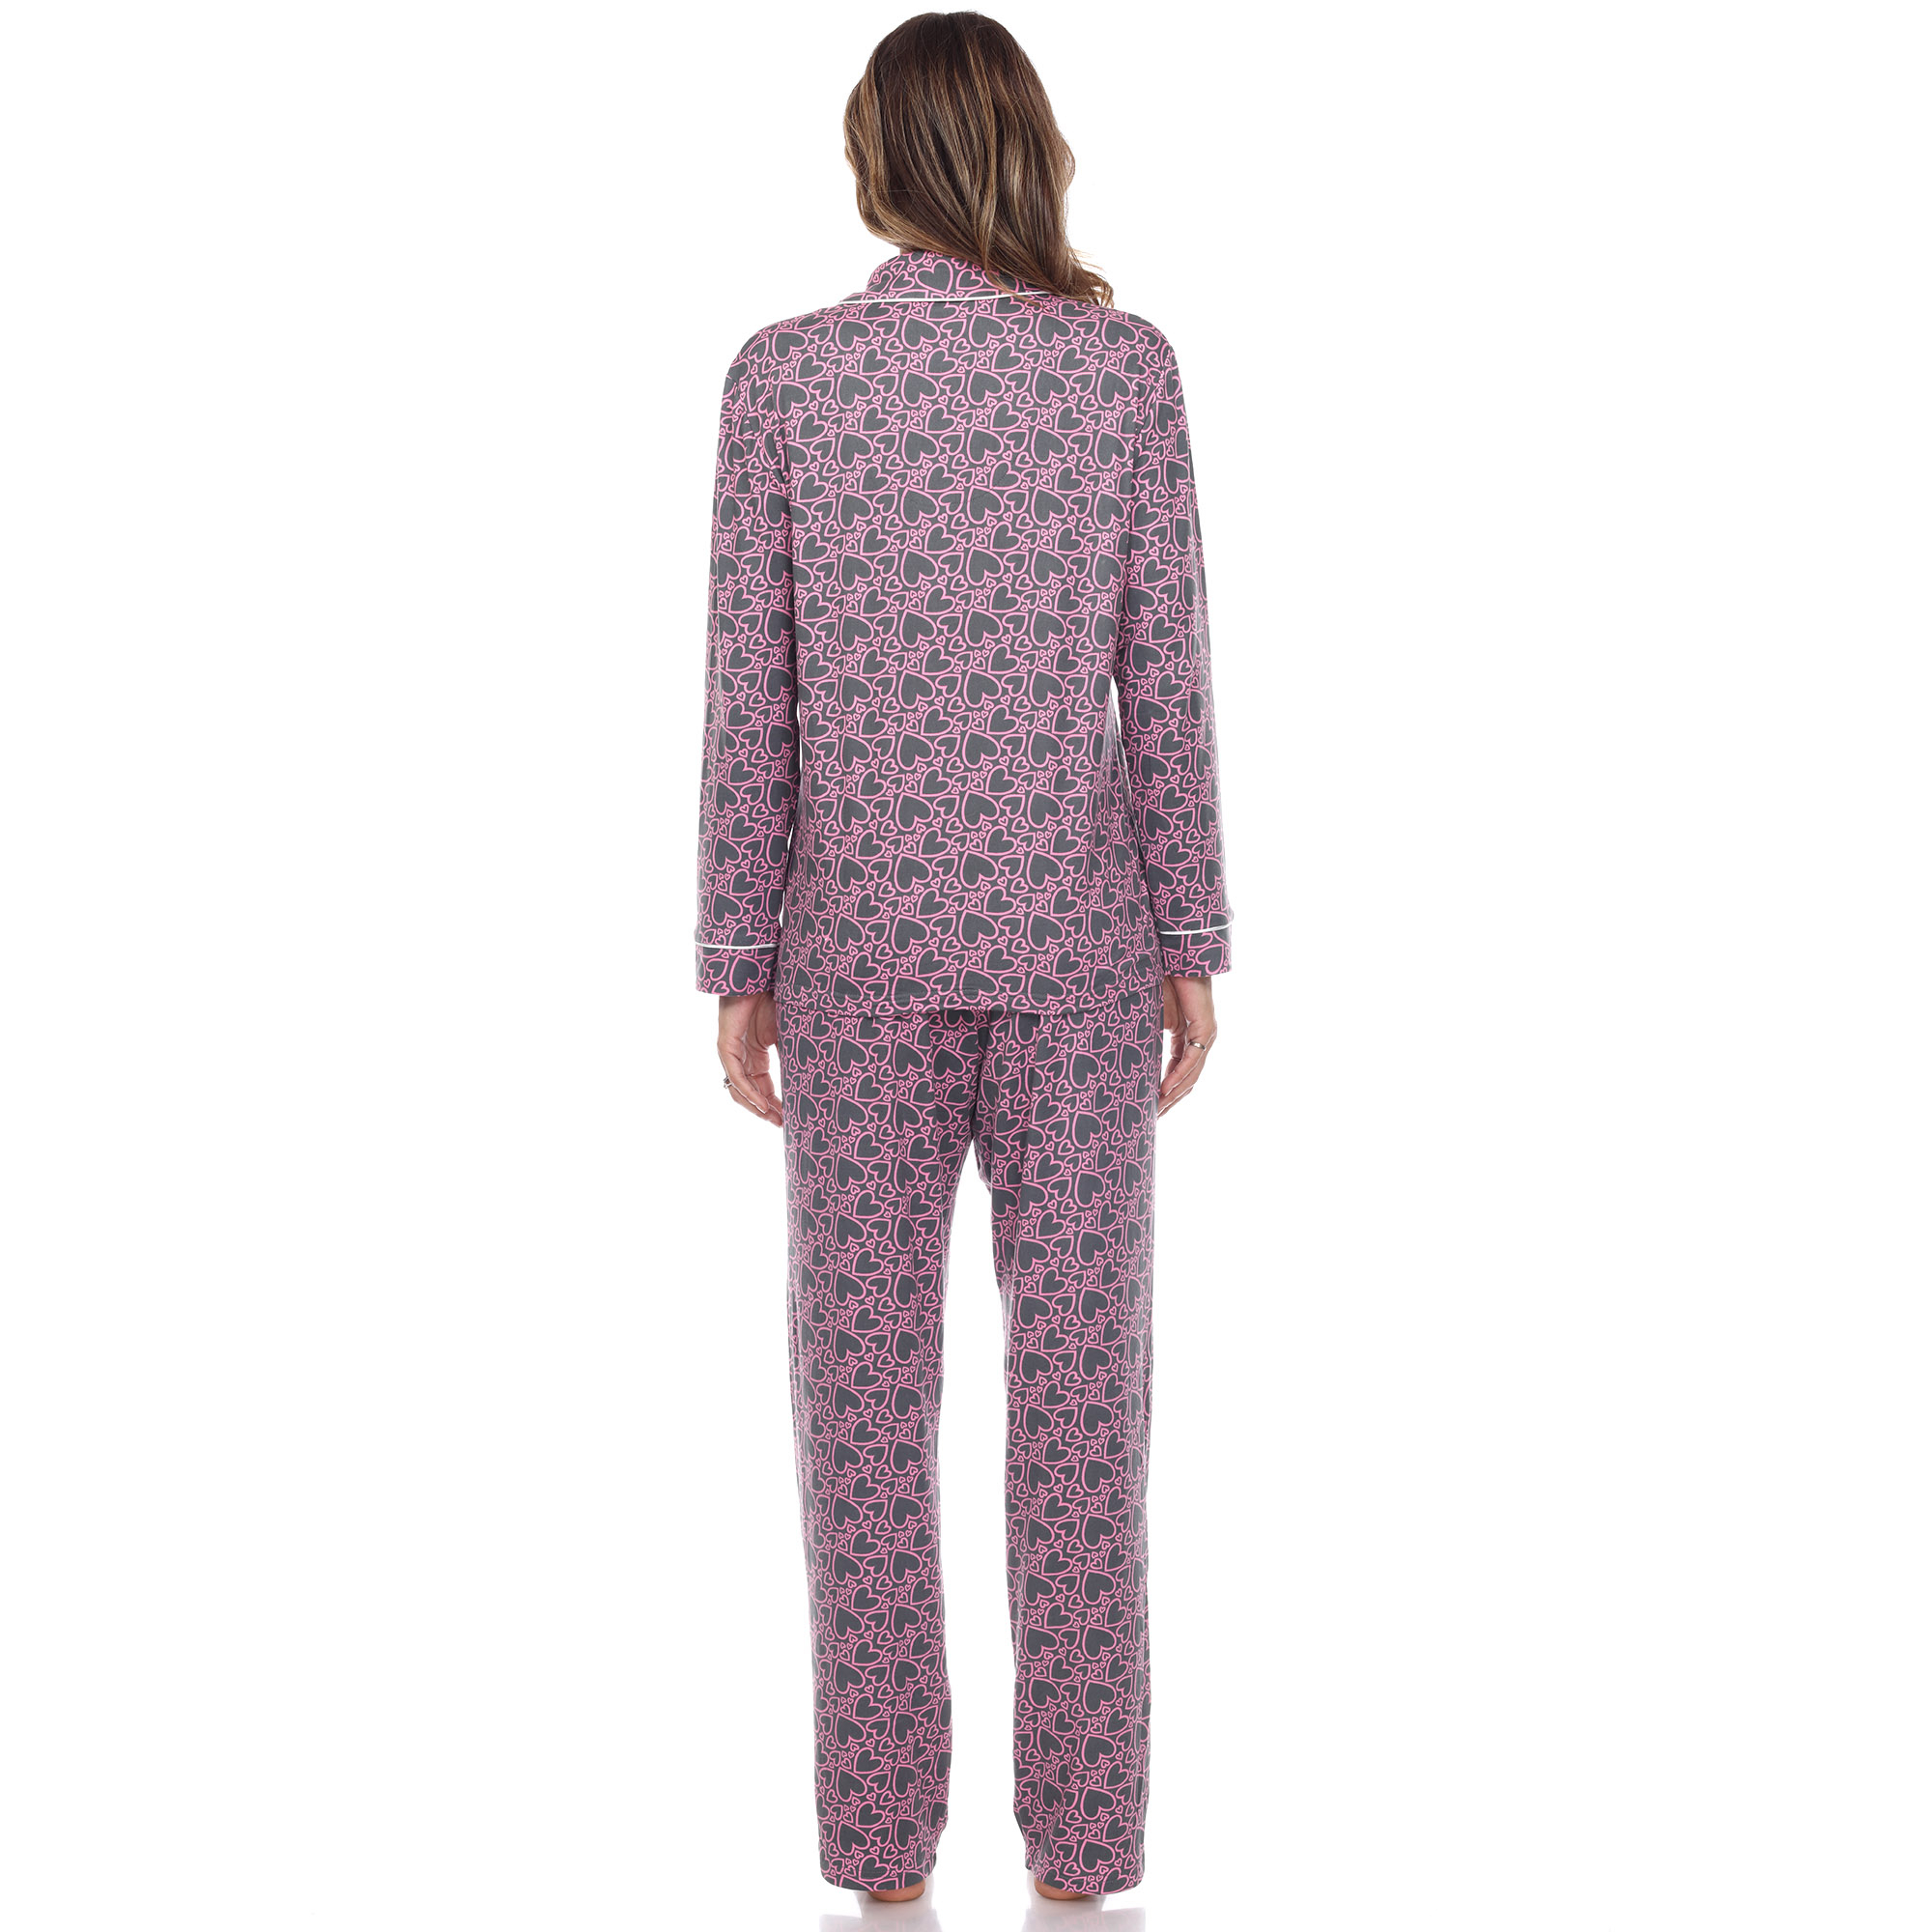 White Mark Women's Long Sleeve Hearts Pajama Set - Pink, Large